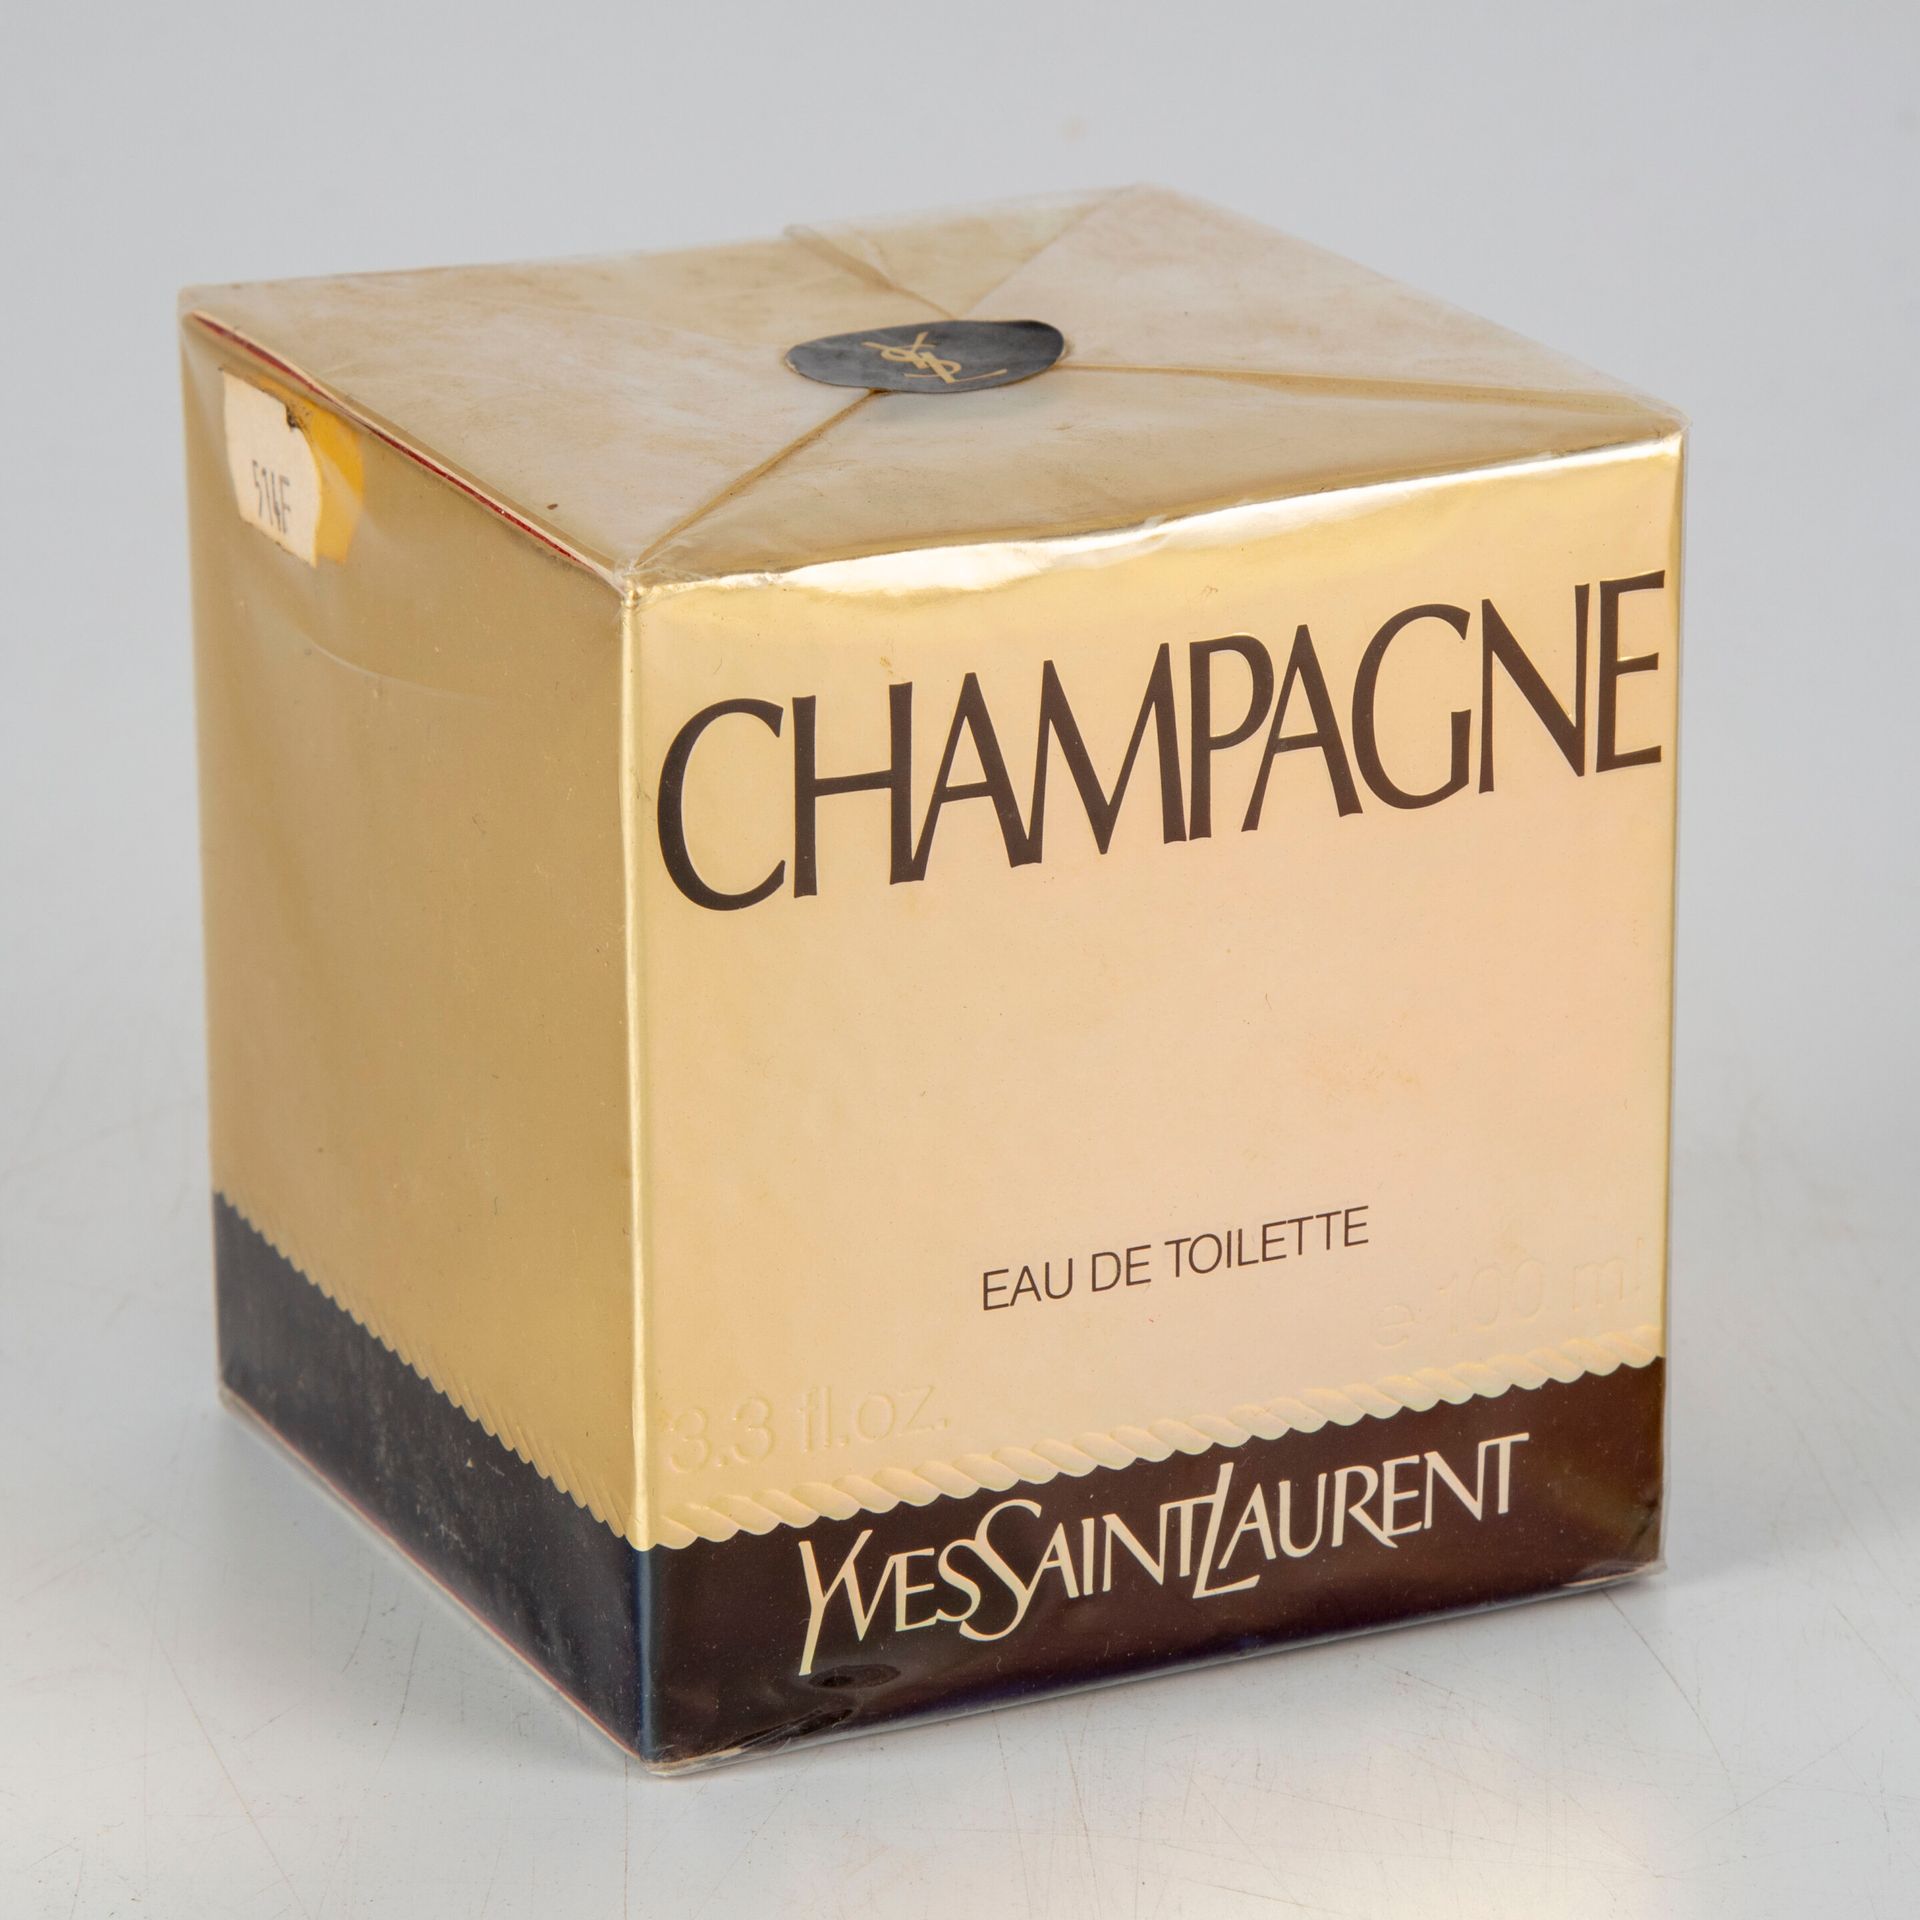 Null Maison Yves Saint Laurent - Paris

Eau de toilette Champagne 100ml 

Etat n&hellip;